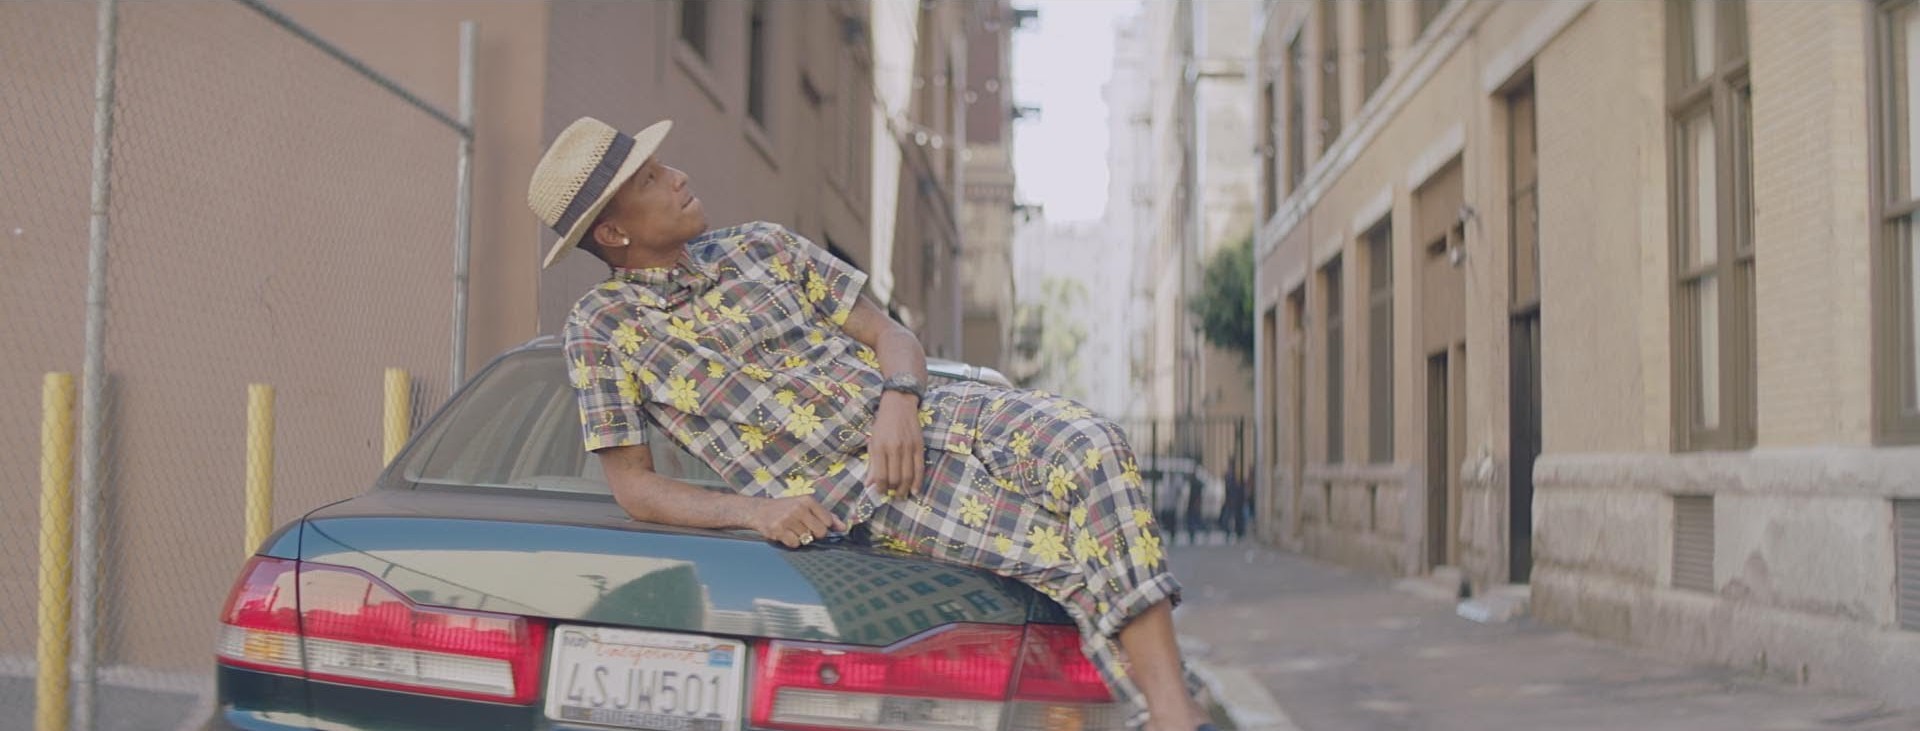 Pharrell Williams Happyje a 2014-es év legnépszerűbb dala